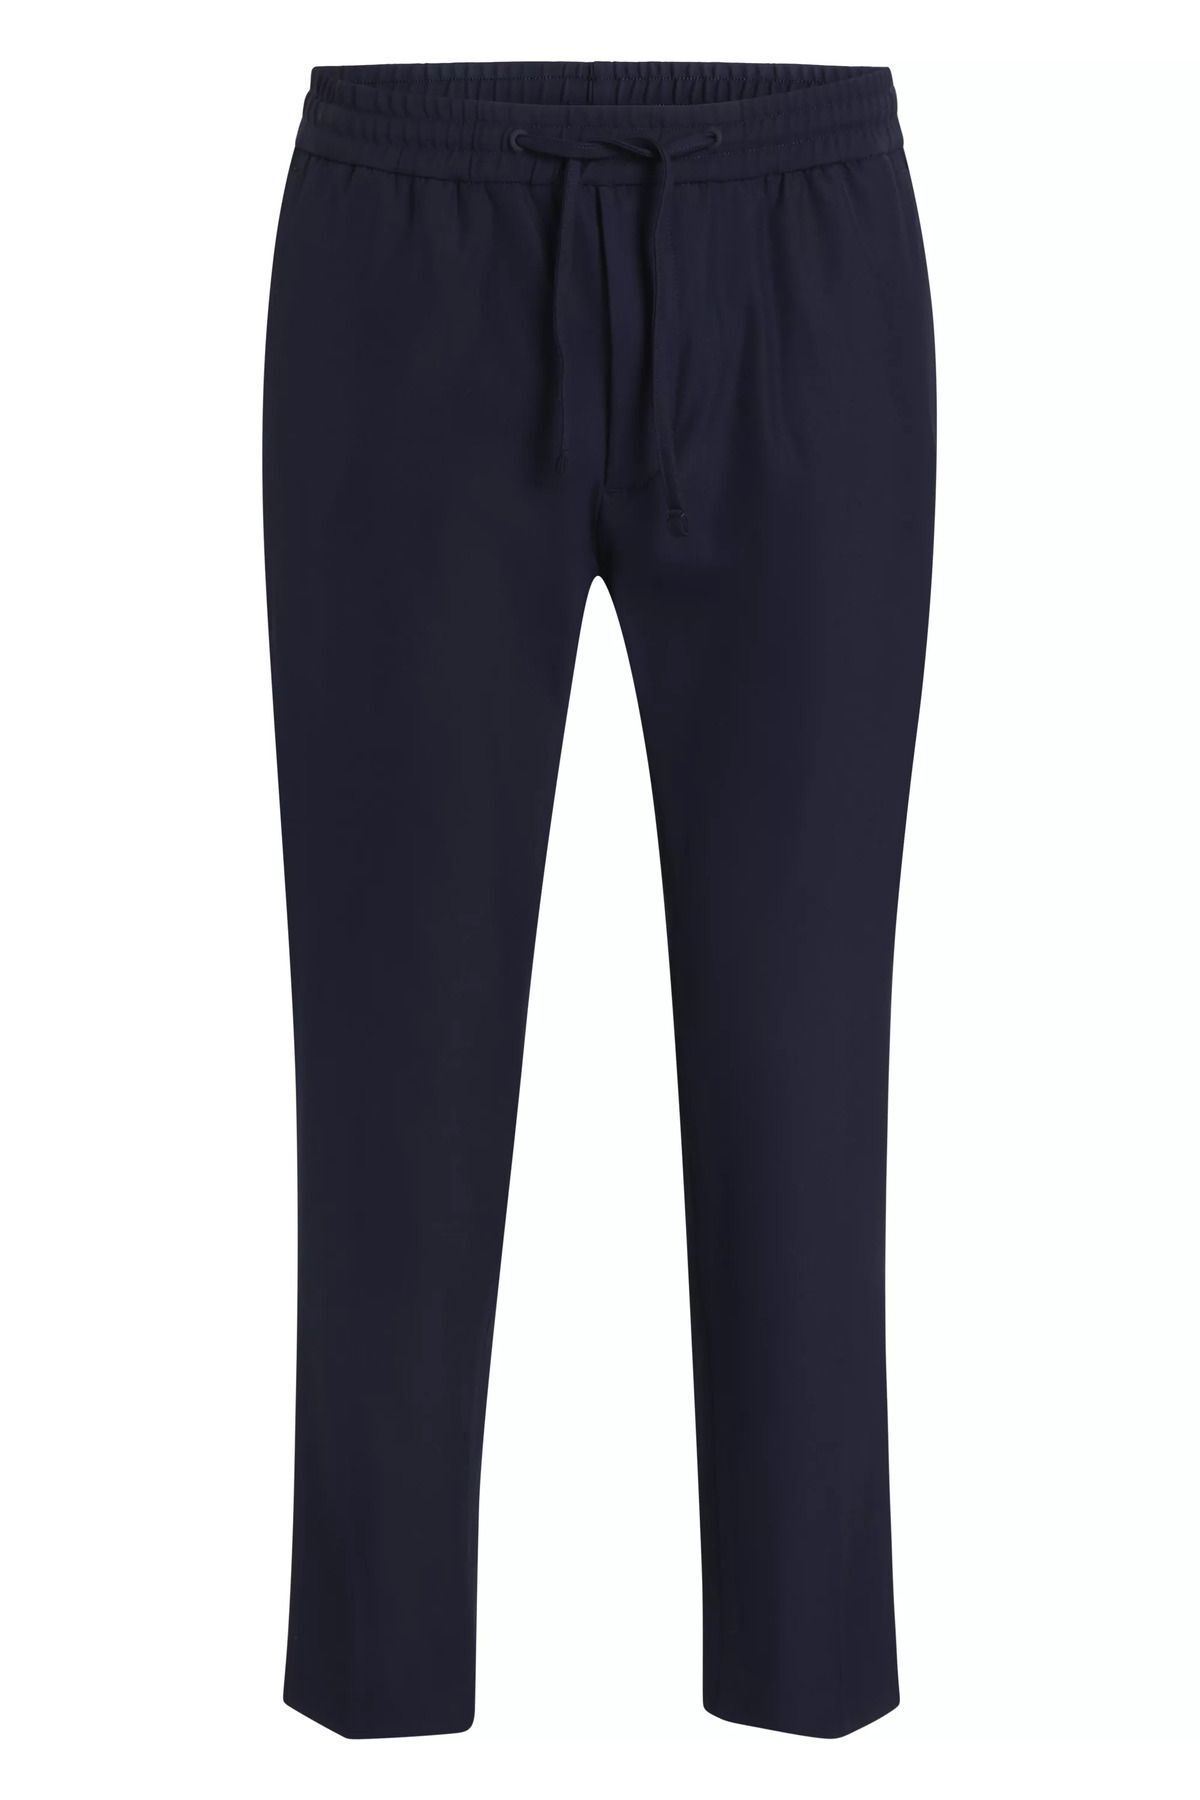 Calvin Klein Erkek Pamuklu Normal Bel 5 Cepli Düğmeli Mavi Pantolon K10K112655-CHW